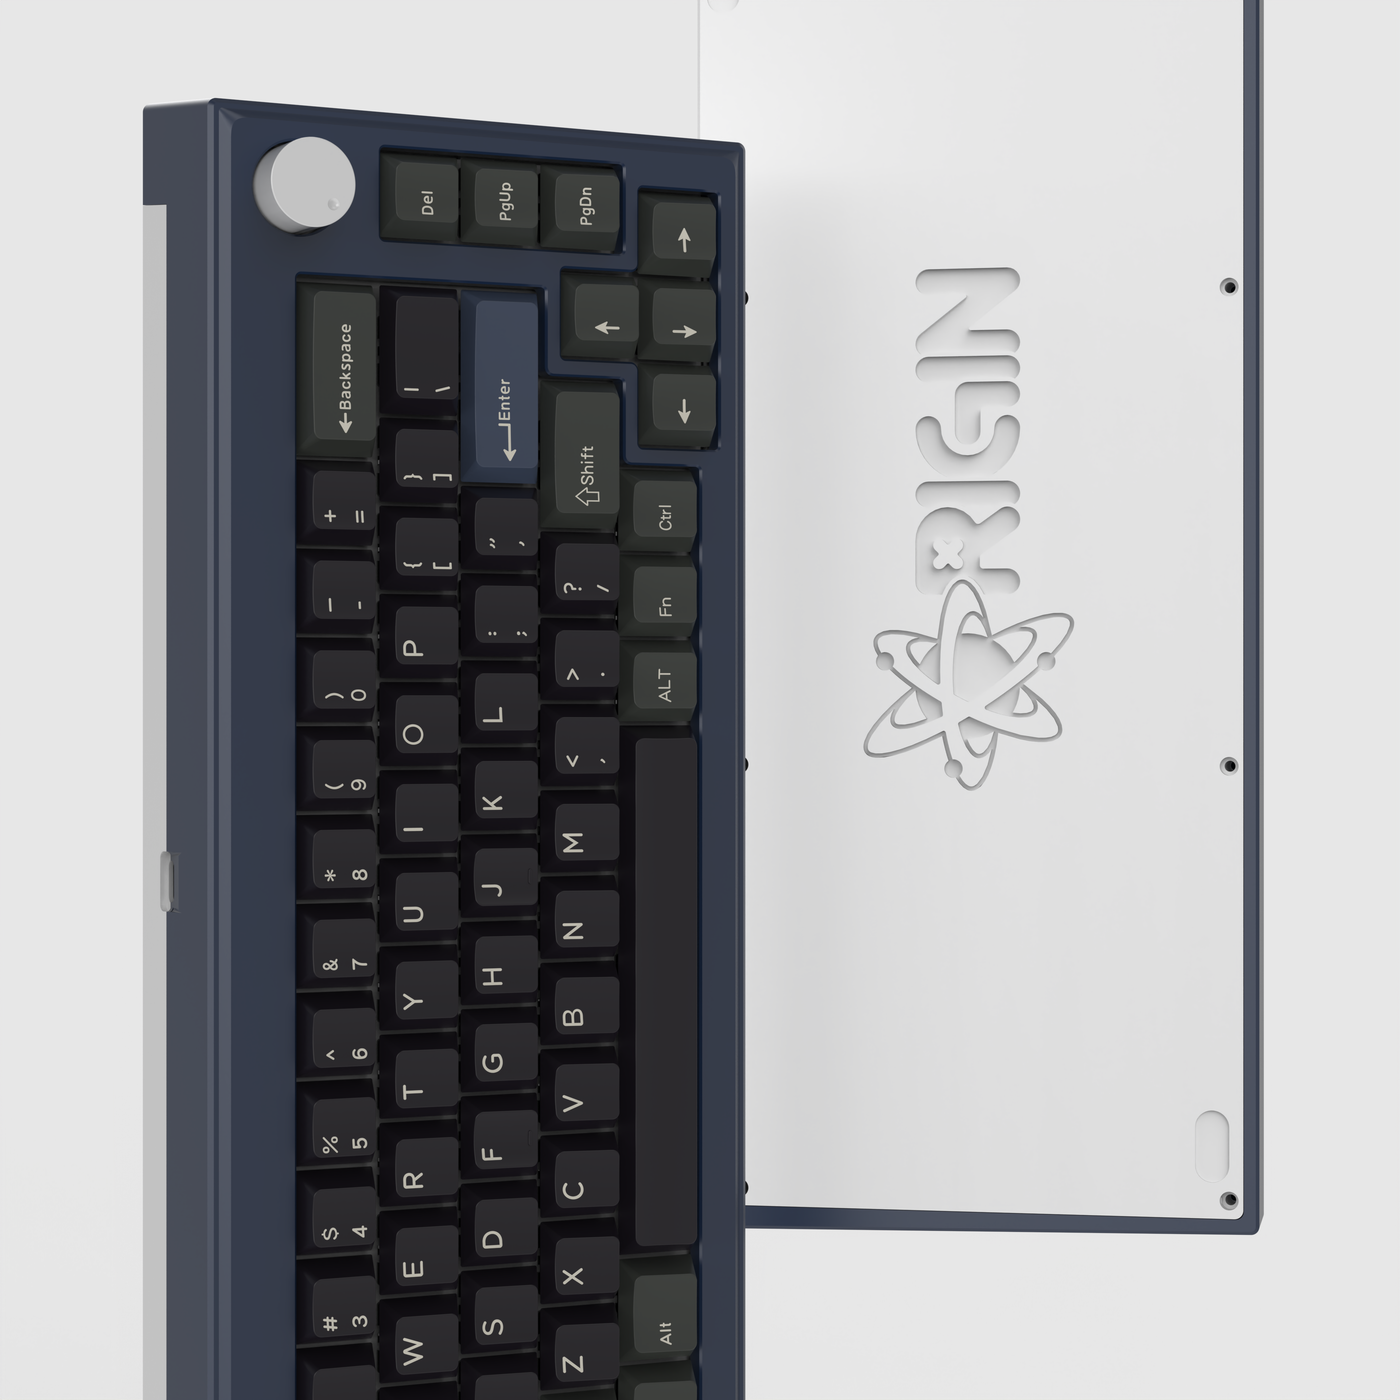 Finalkey Origin65 Aluminum Keyboard Kit